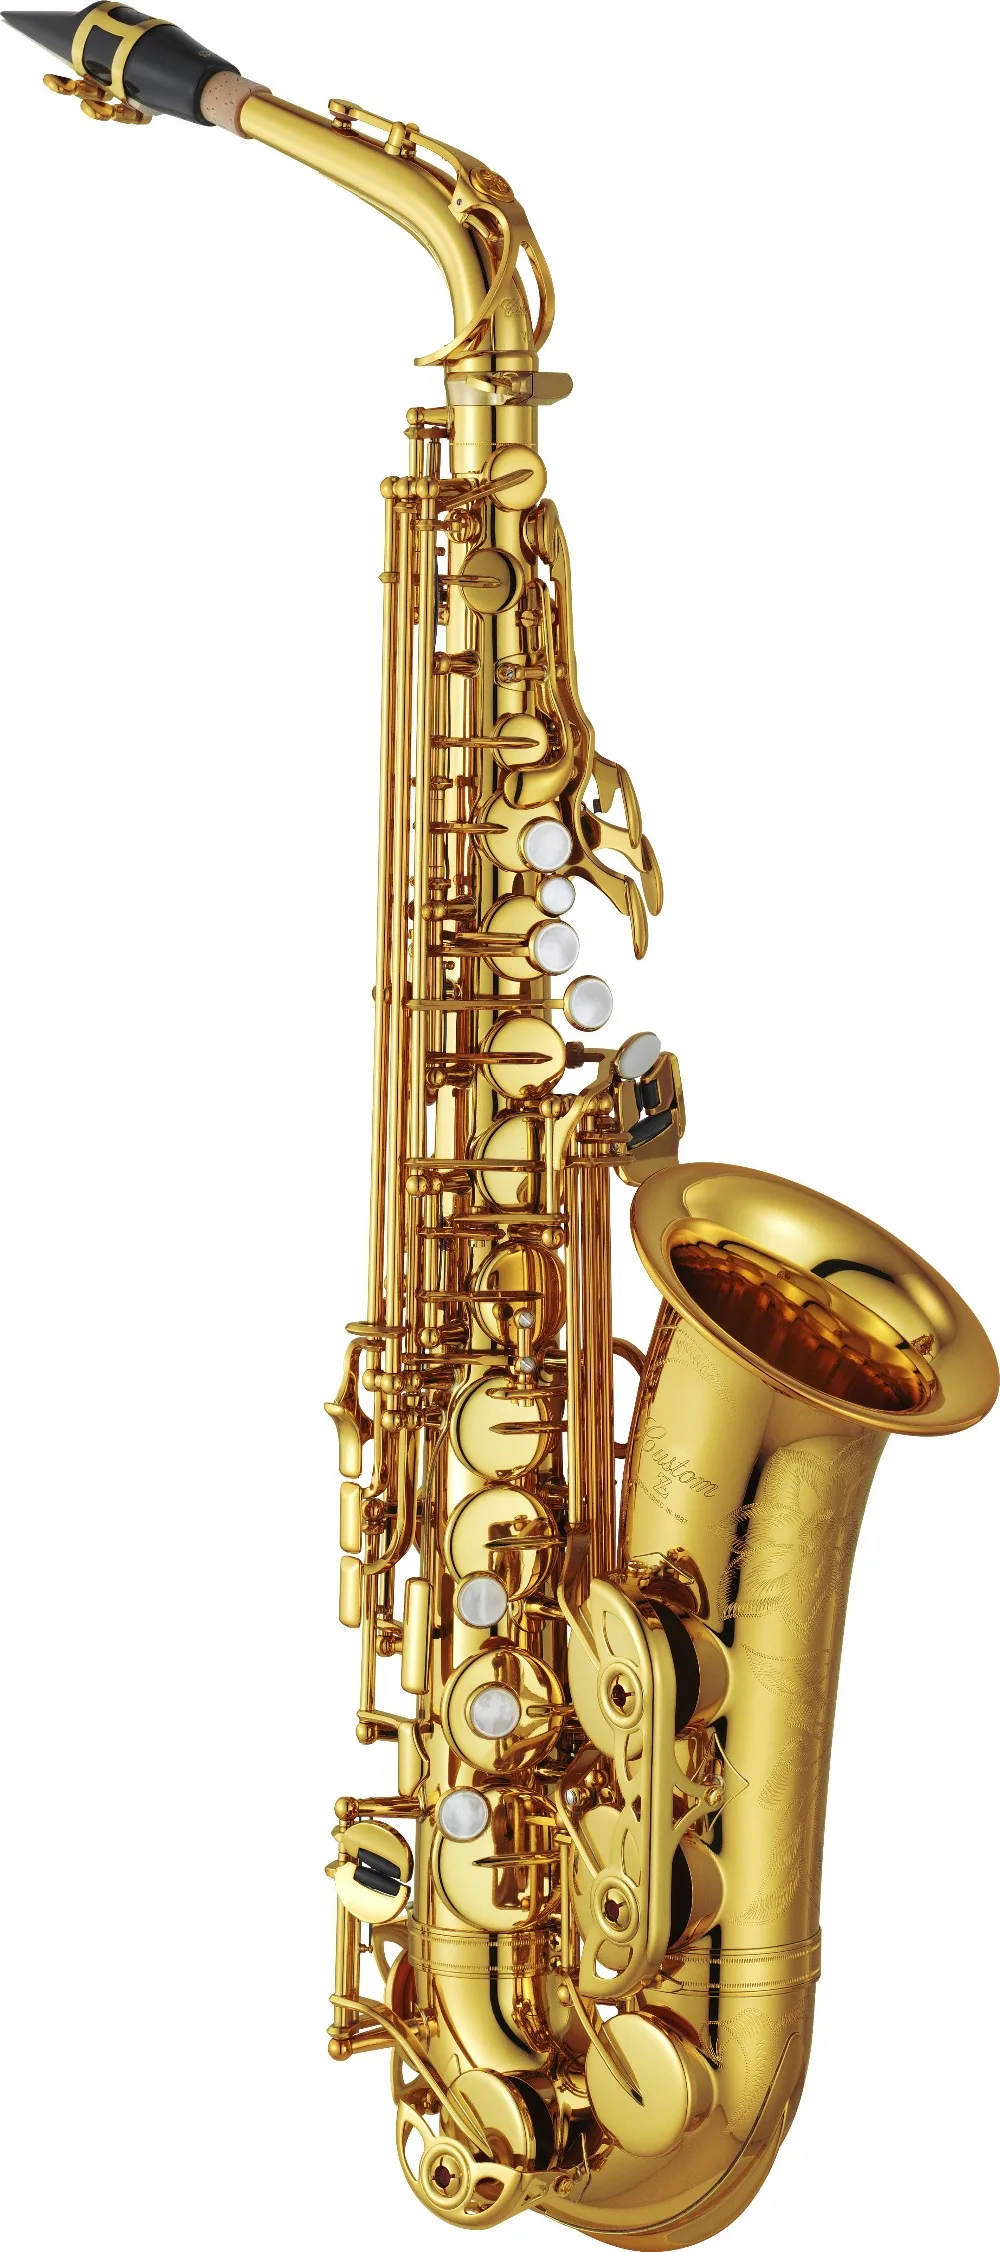 De Xin Саксофон альт 82ZB Профессиональный альт саксофон на заказ 82Z серия высокий саксофон черный лак с мундштуком Reeds шейный чехол